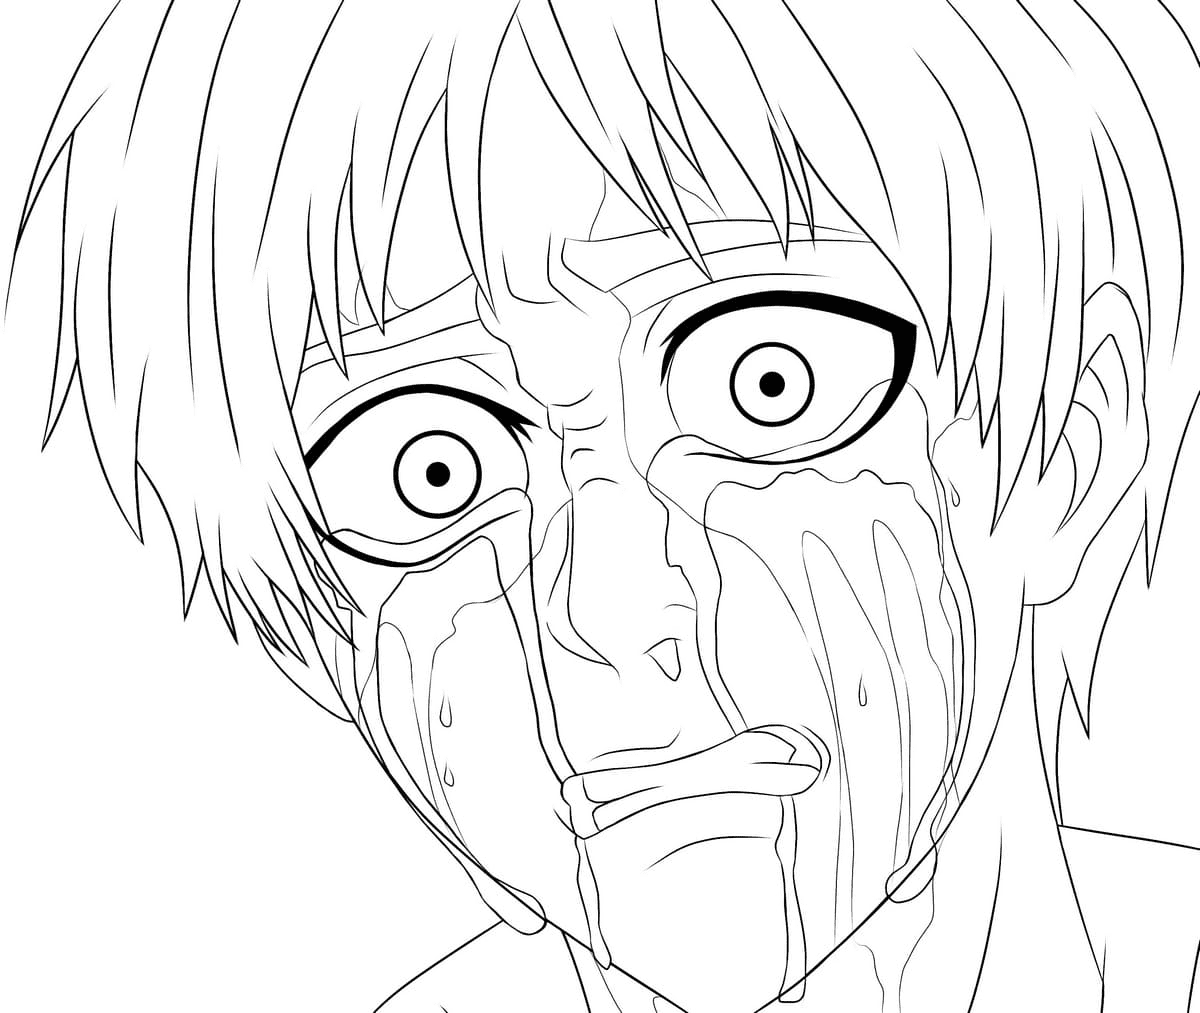 Eren weint Malvorlagen